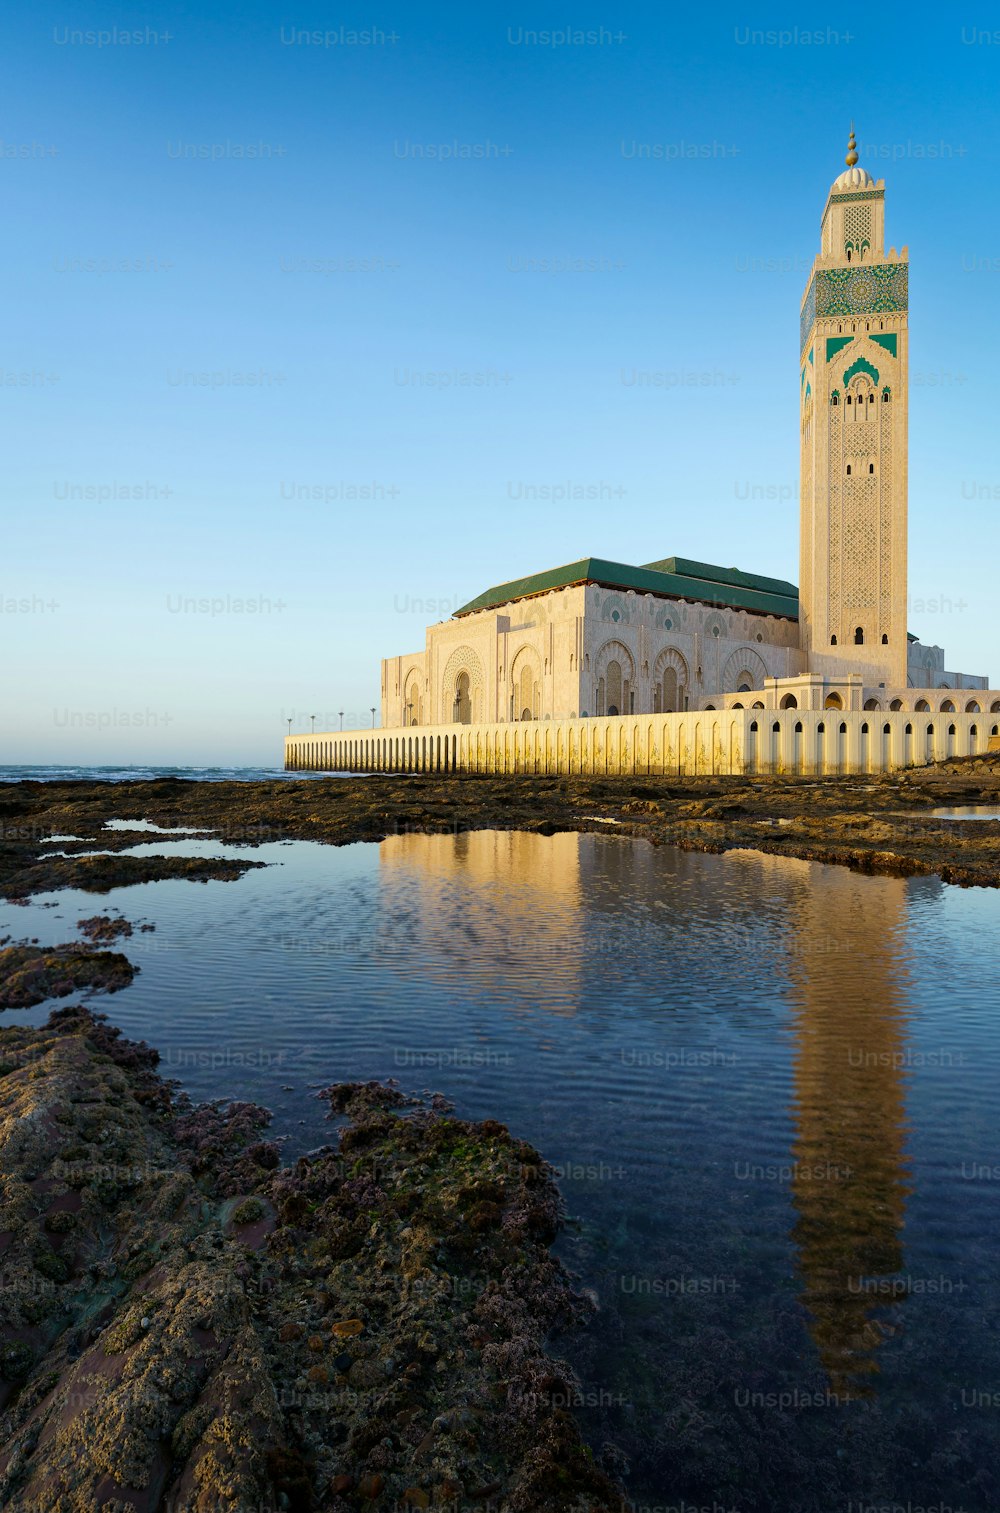 La bellissima moschea di Hassan II con il suo riflesso sull'acqua a Casablanca, in Marocco